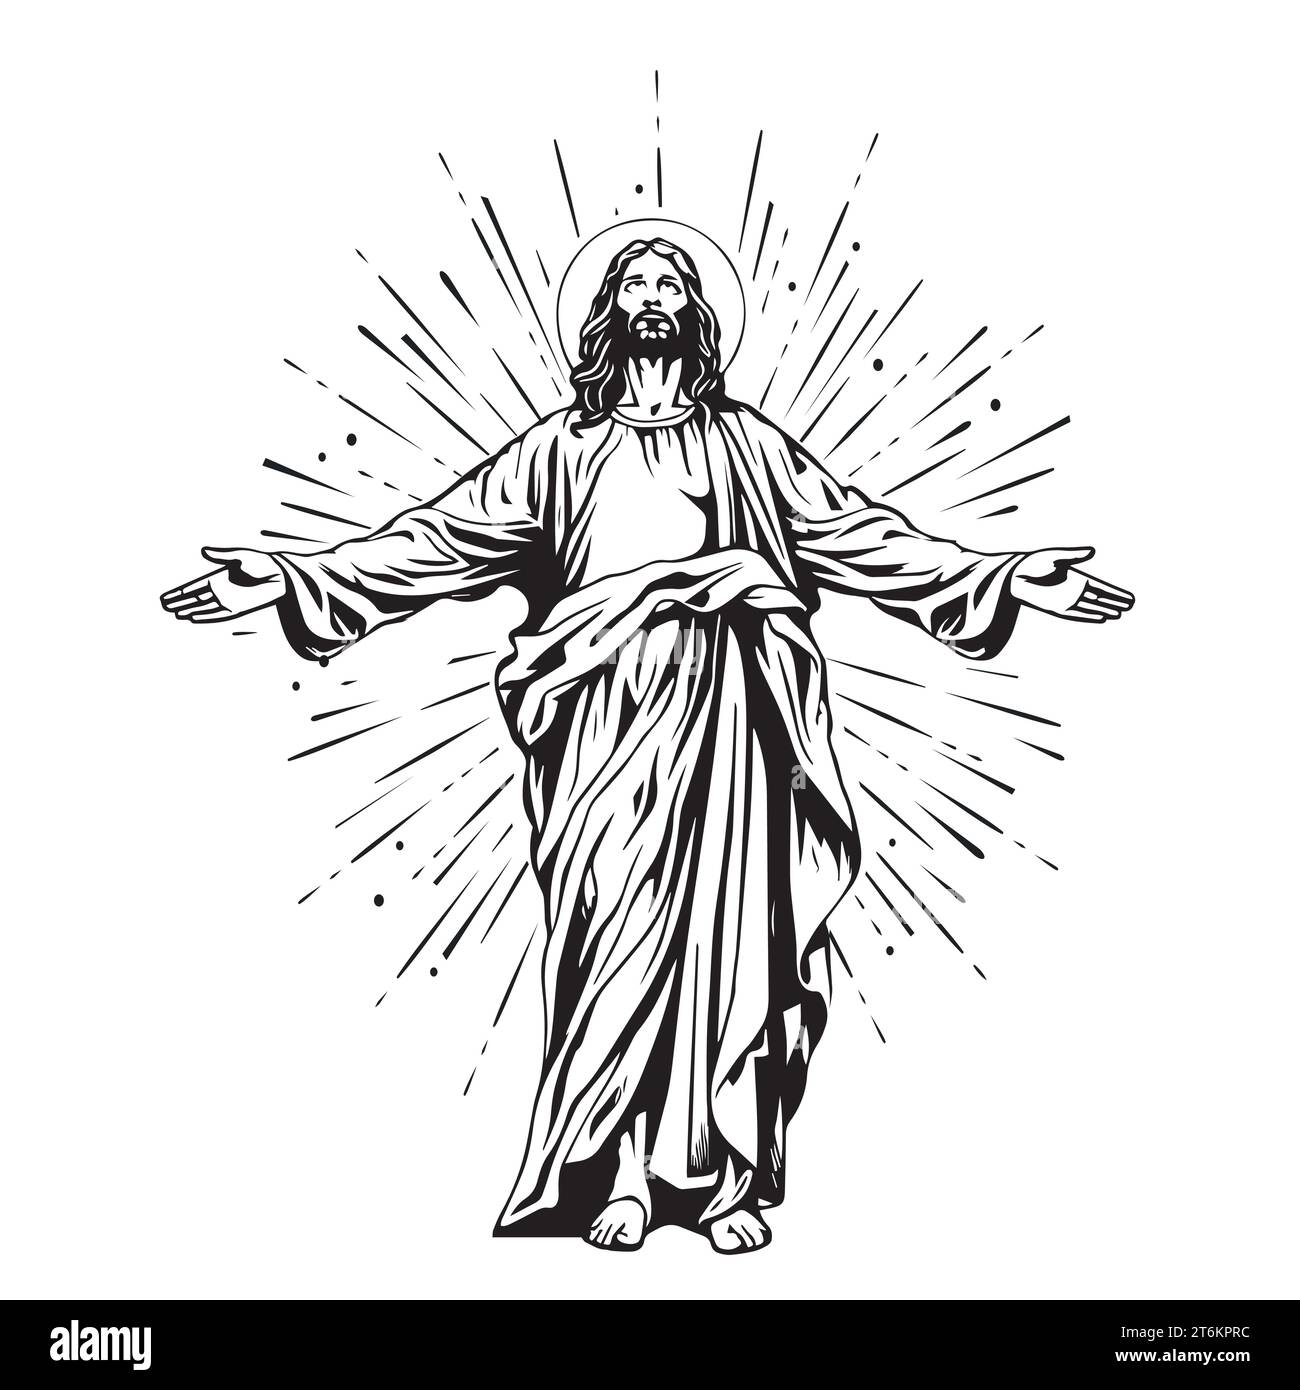 Dieu, Jésus christ, grâce, bon, concept d'ascension. Silhouette dessinée à la main de Jésus-christ, esquisse du concept de fils de dieu. Illustration vectorielle isolée. Illustration de Vecteur